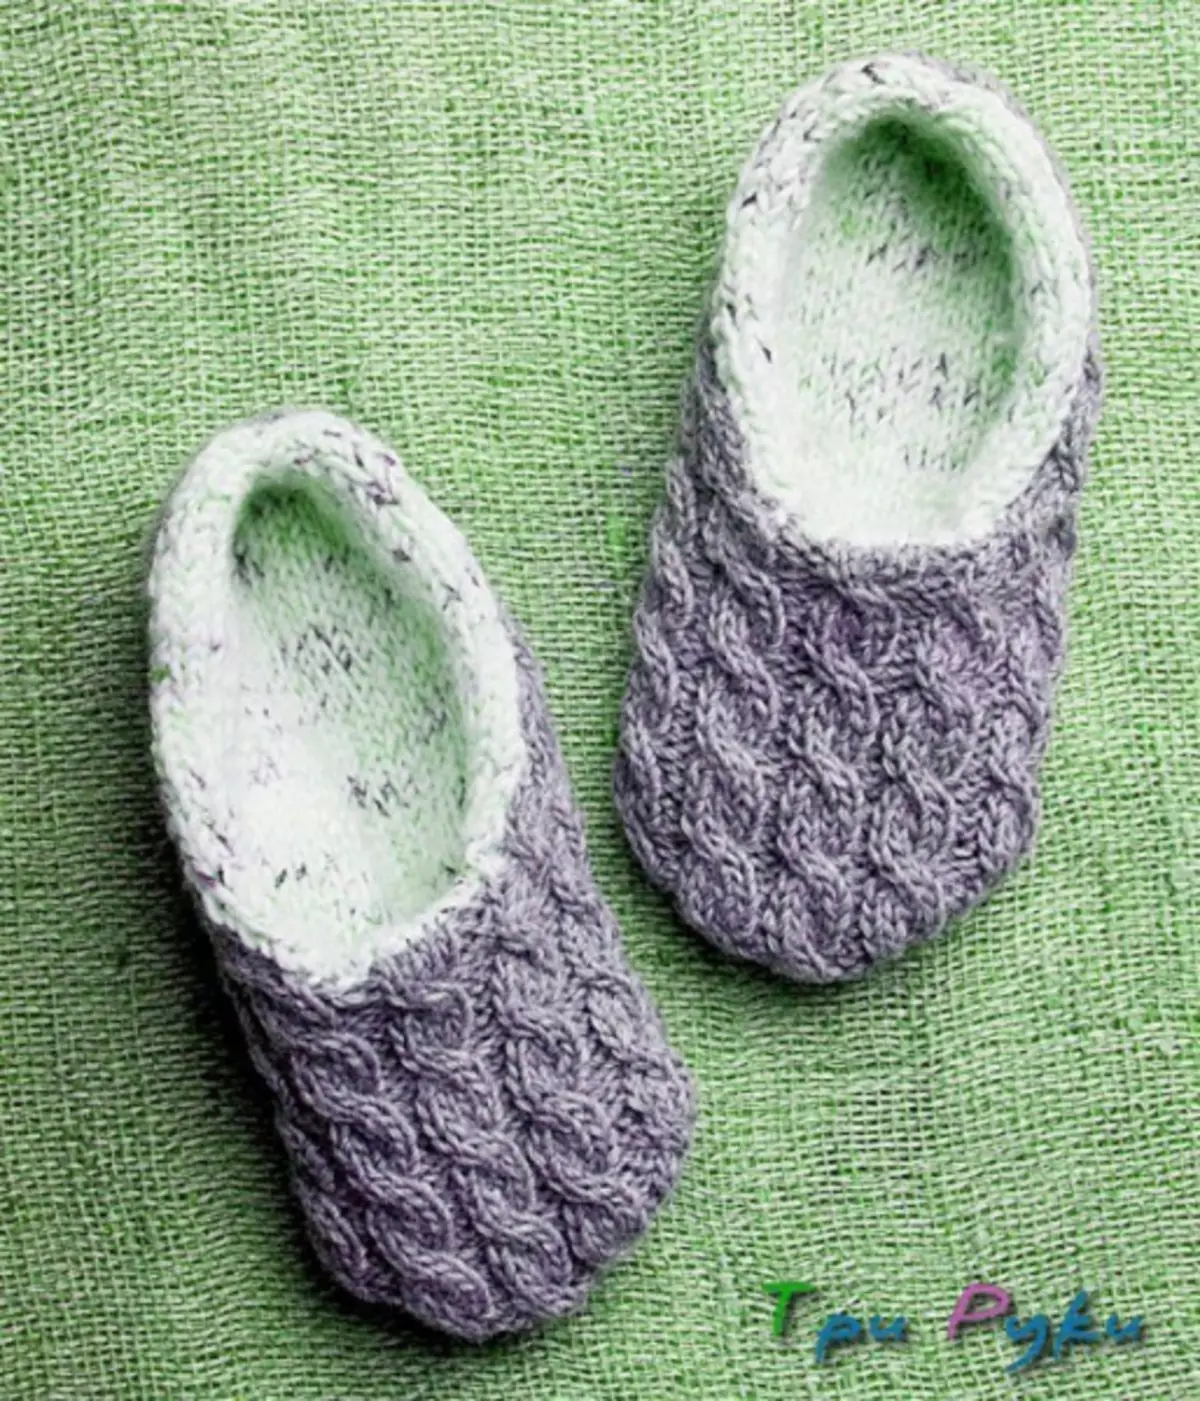 Comment nouer des pantoufles maison avec vos propres mains: pantoufles en tricot et pistes avec aiguilles à tricoter, description détaillée et schéma de tricot